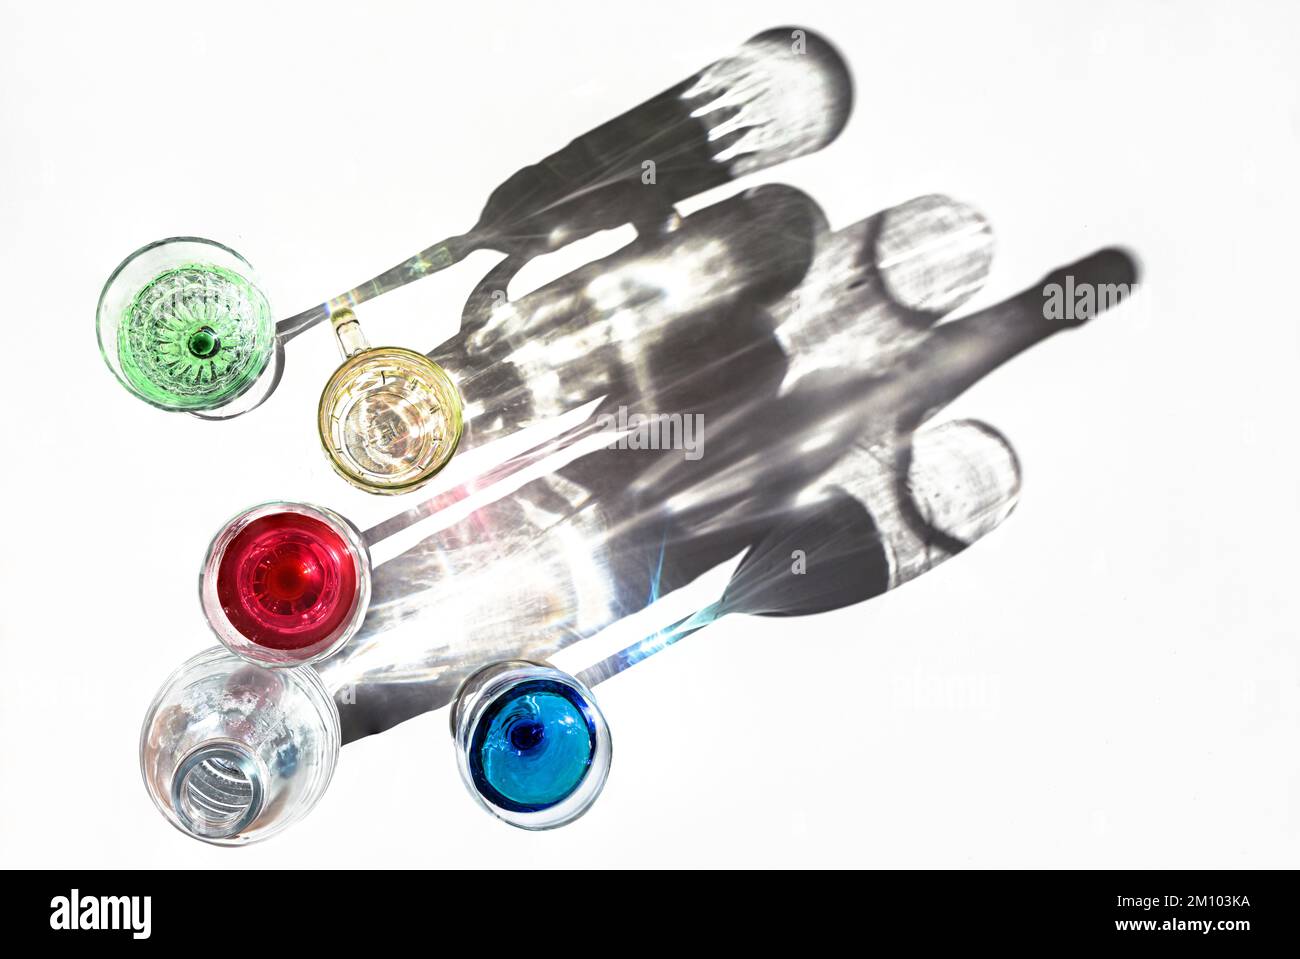 Les verres à boire avec des liquides colorés et une bouteille d'eau jettent des ombres sur un fond lumineux, art abstrait, espace de copie, focus sélectionné, étroit Banque D'Images